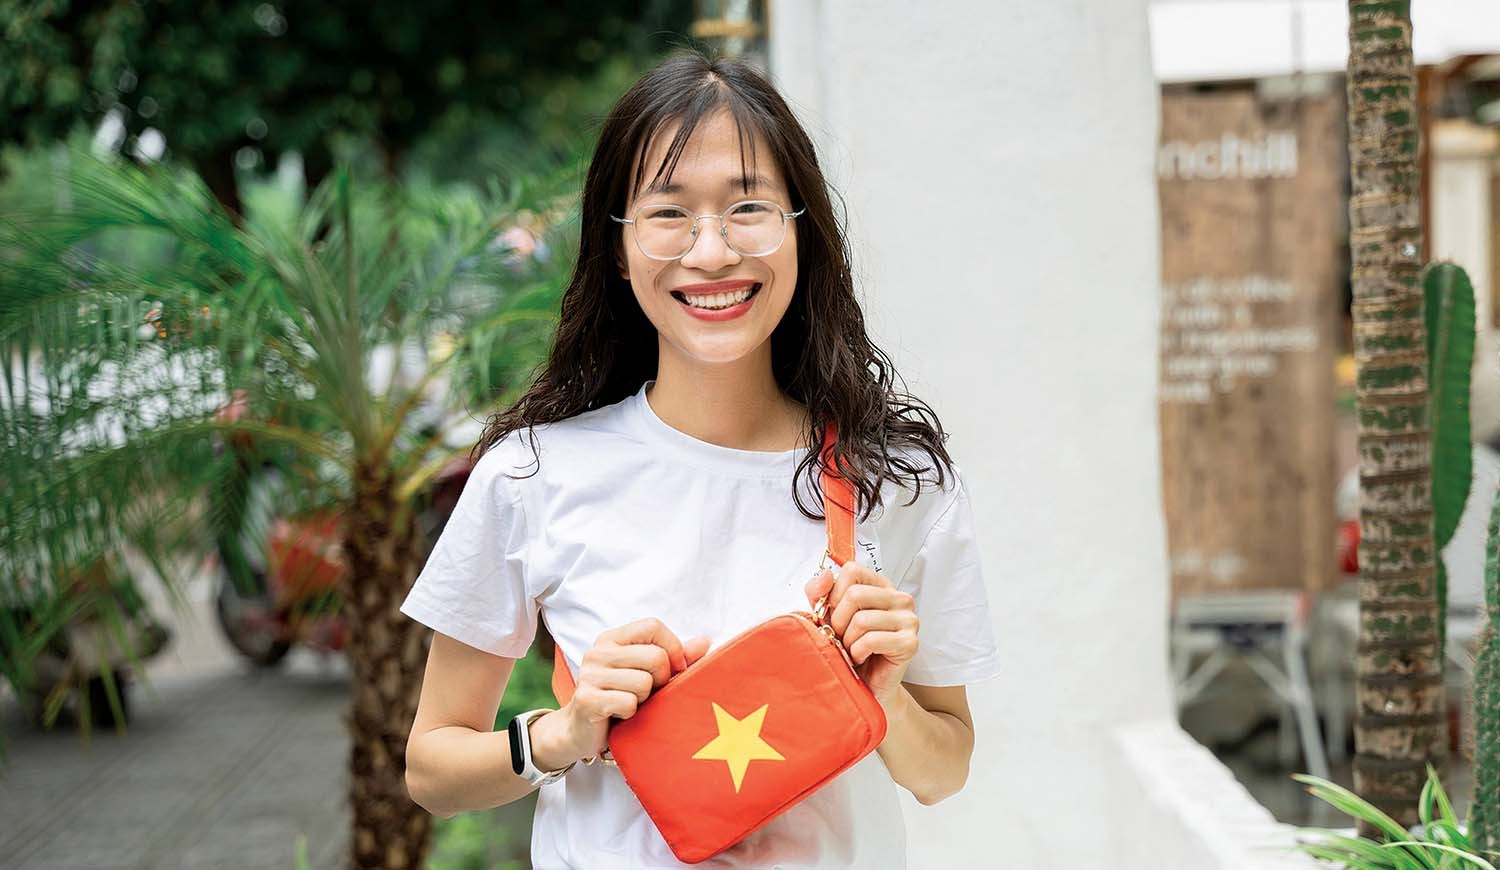 
Chia sẻ về quá trình khởi nghiệp từ những sản phẩm làm bằng tay, Hải Yến cho biết, ý tưởng thành lập một shop handmade nhỏ xinh đã được cô gái đến từ Bắc Giang nuôi dưỡng từ khi còn là sinh viên của Đại học Lao động xã hội
